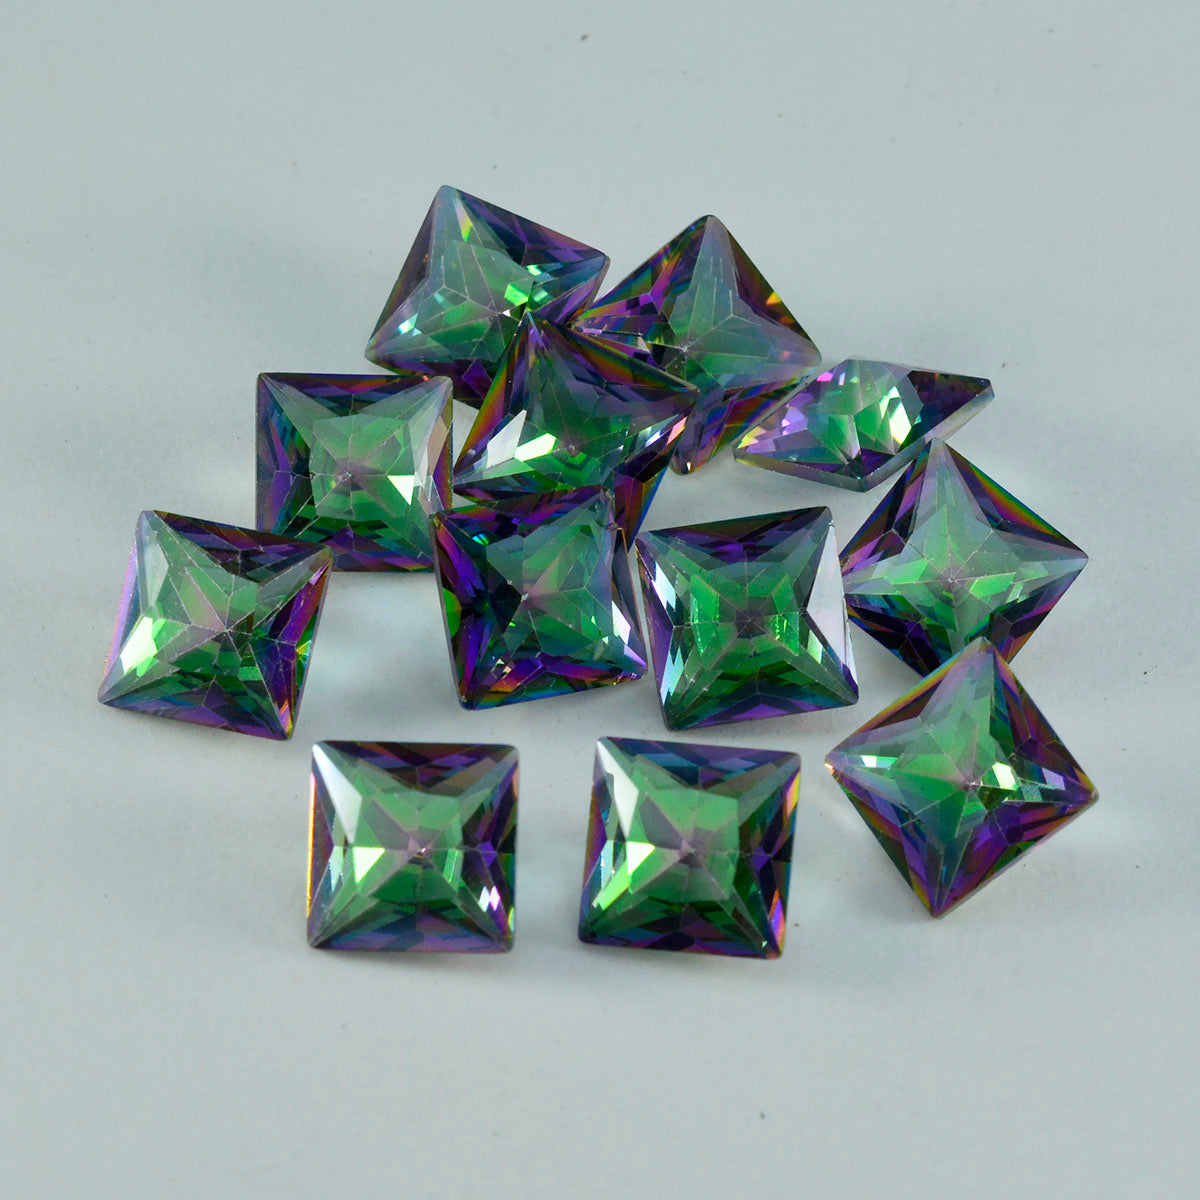 riyogems 1 шт. разноцветный мистический кварц ограненный 11x11 мм квадратной формы красивый качественный камень